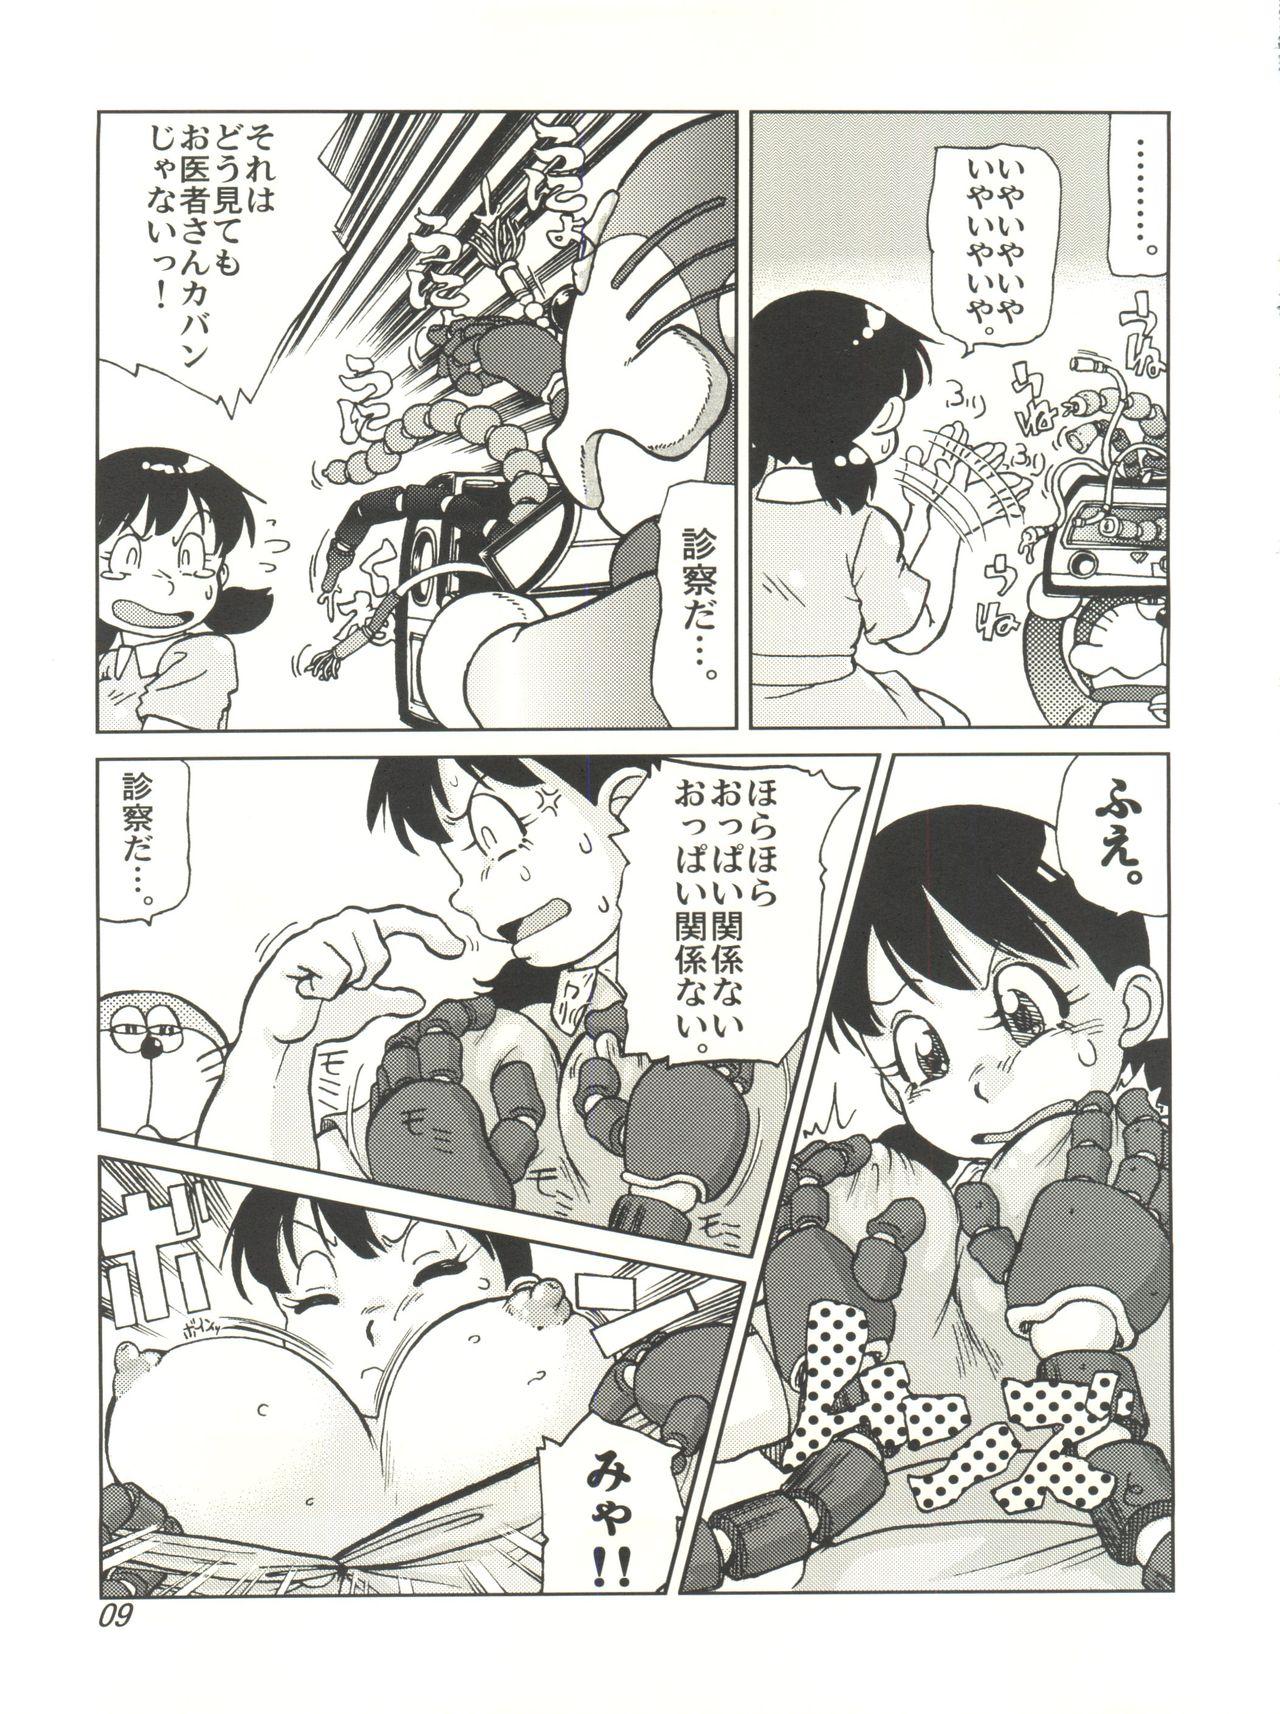 Analsex COUNTER DORA SHIZUKA & KAKUGARI GUARDIAN - Doraemon Amazing - Page 8